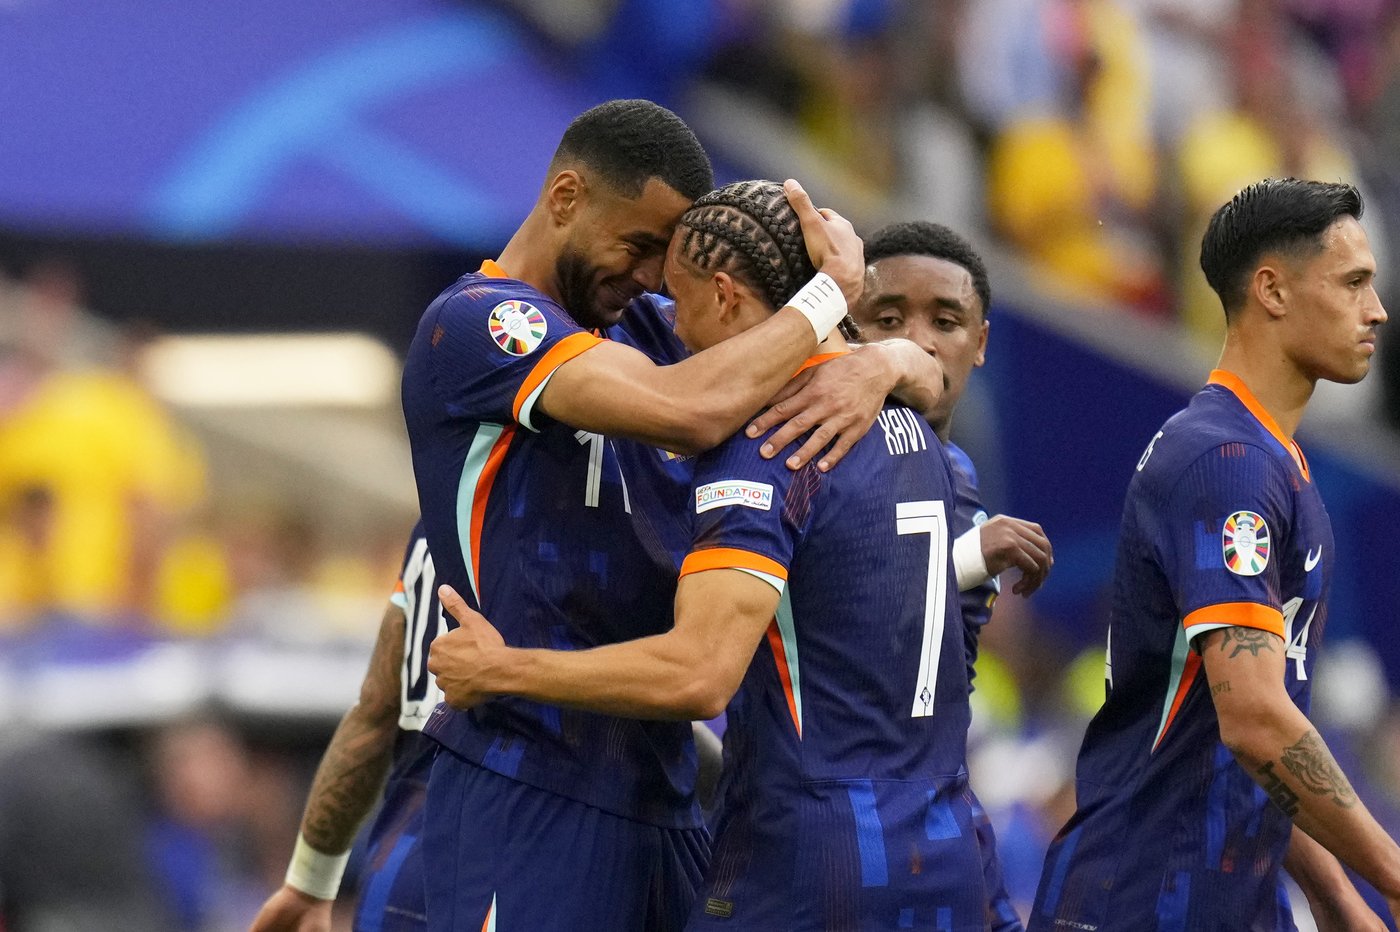 Les Pays-Bas écrasent la Roumanie 3-0 et accèdent aux quarts de finale de l’Euro